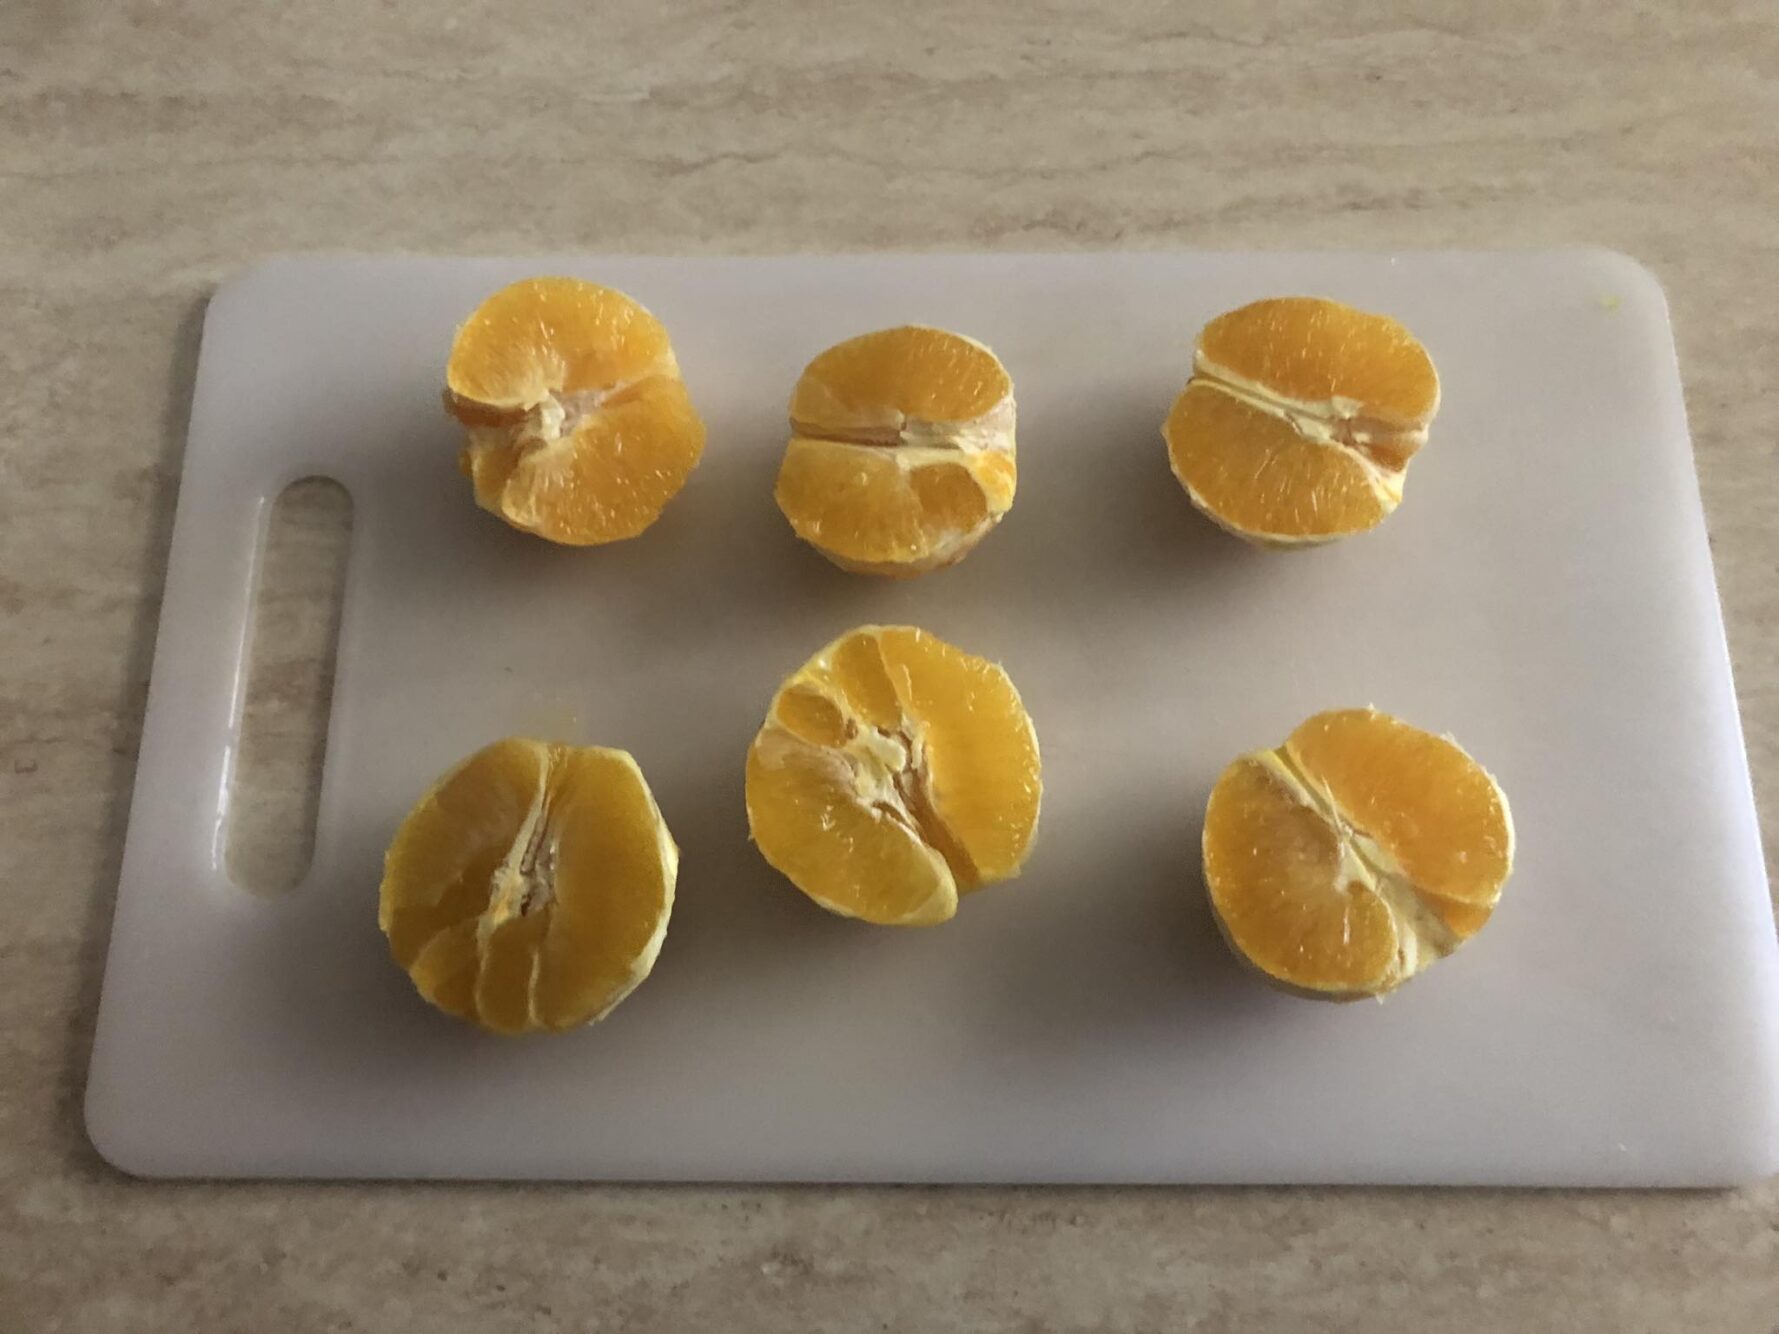 Insalata di finocchi e arance
tagliatele in due parti